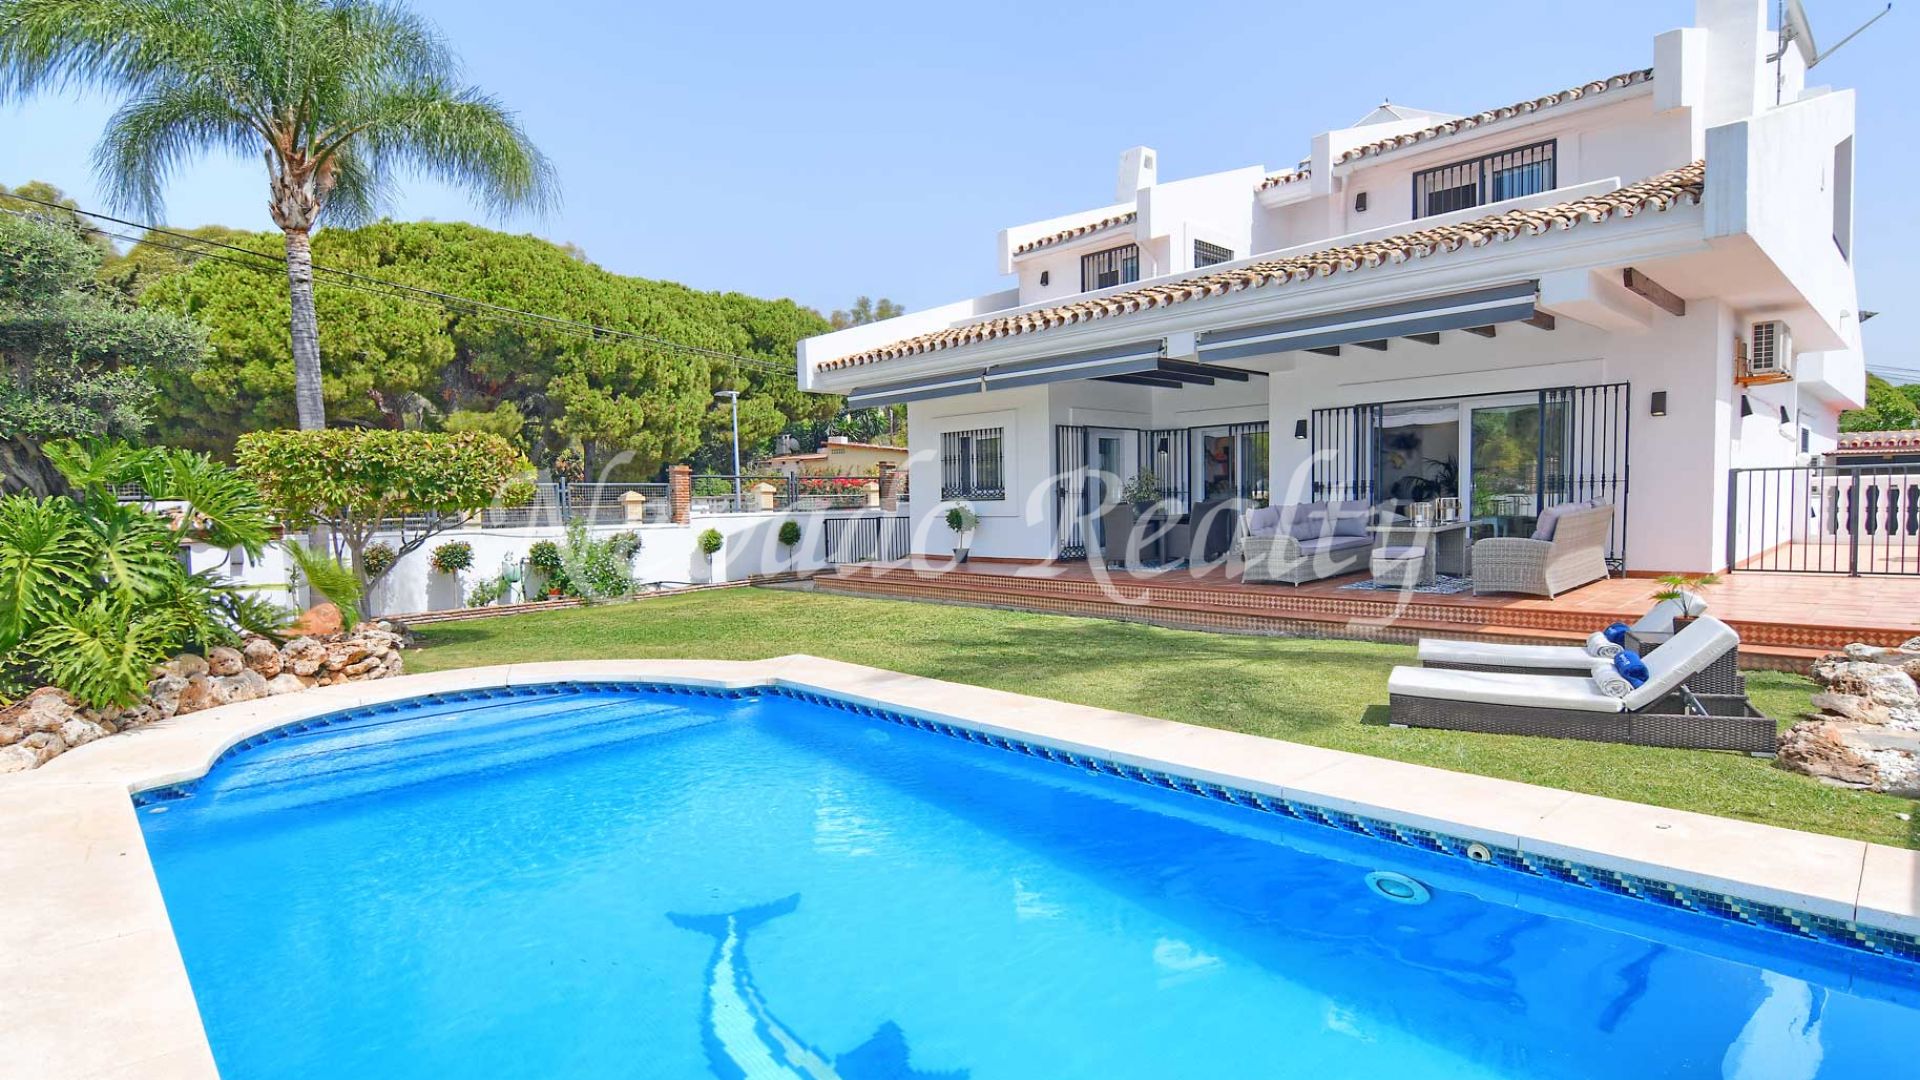 Family villa in Marbella centre close to all amenities